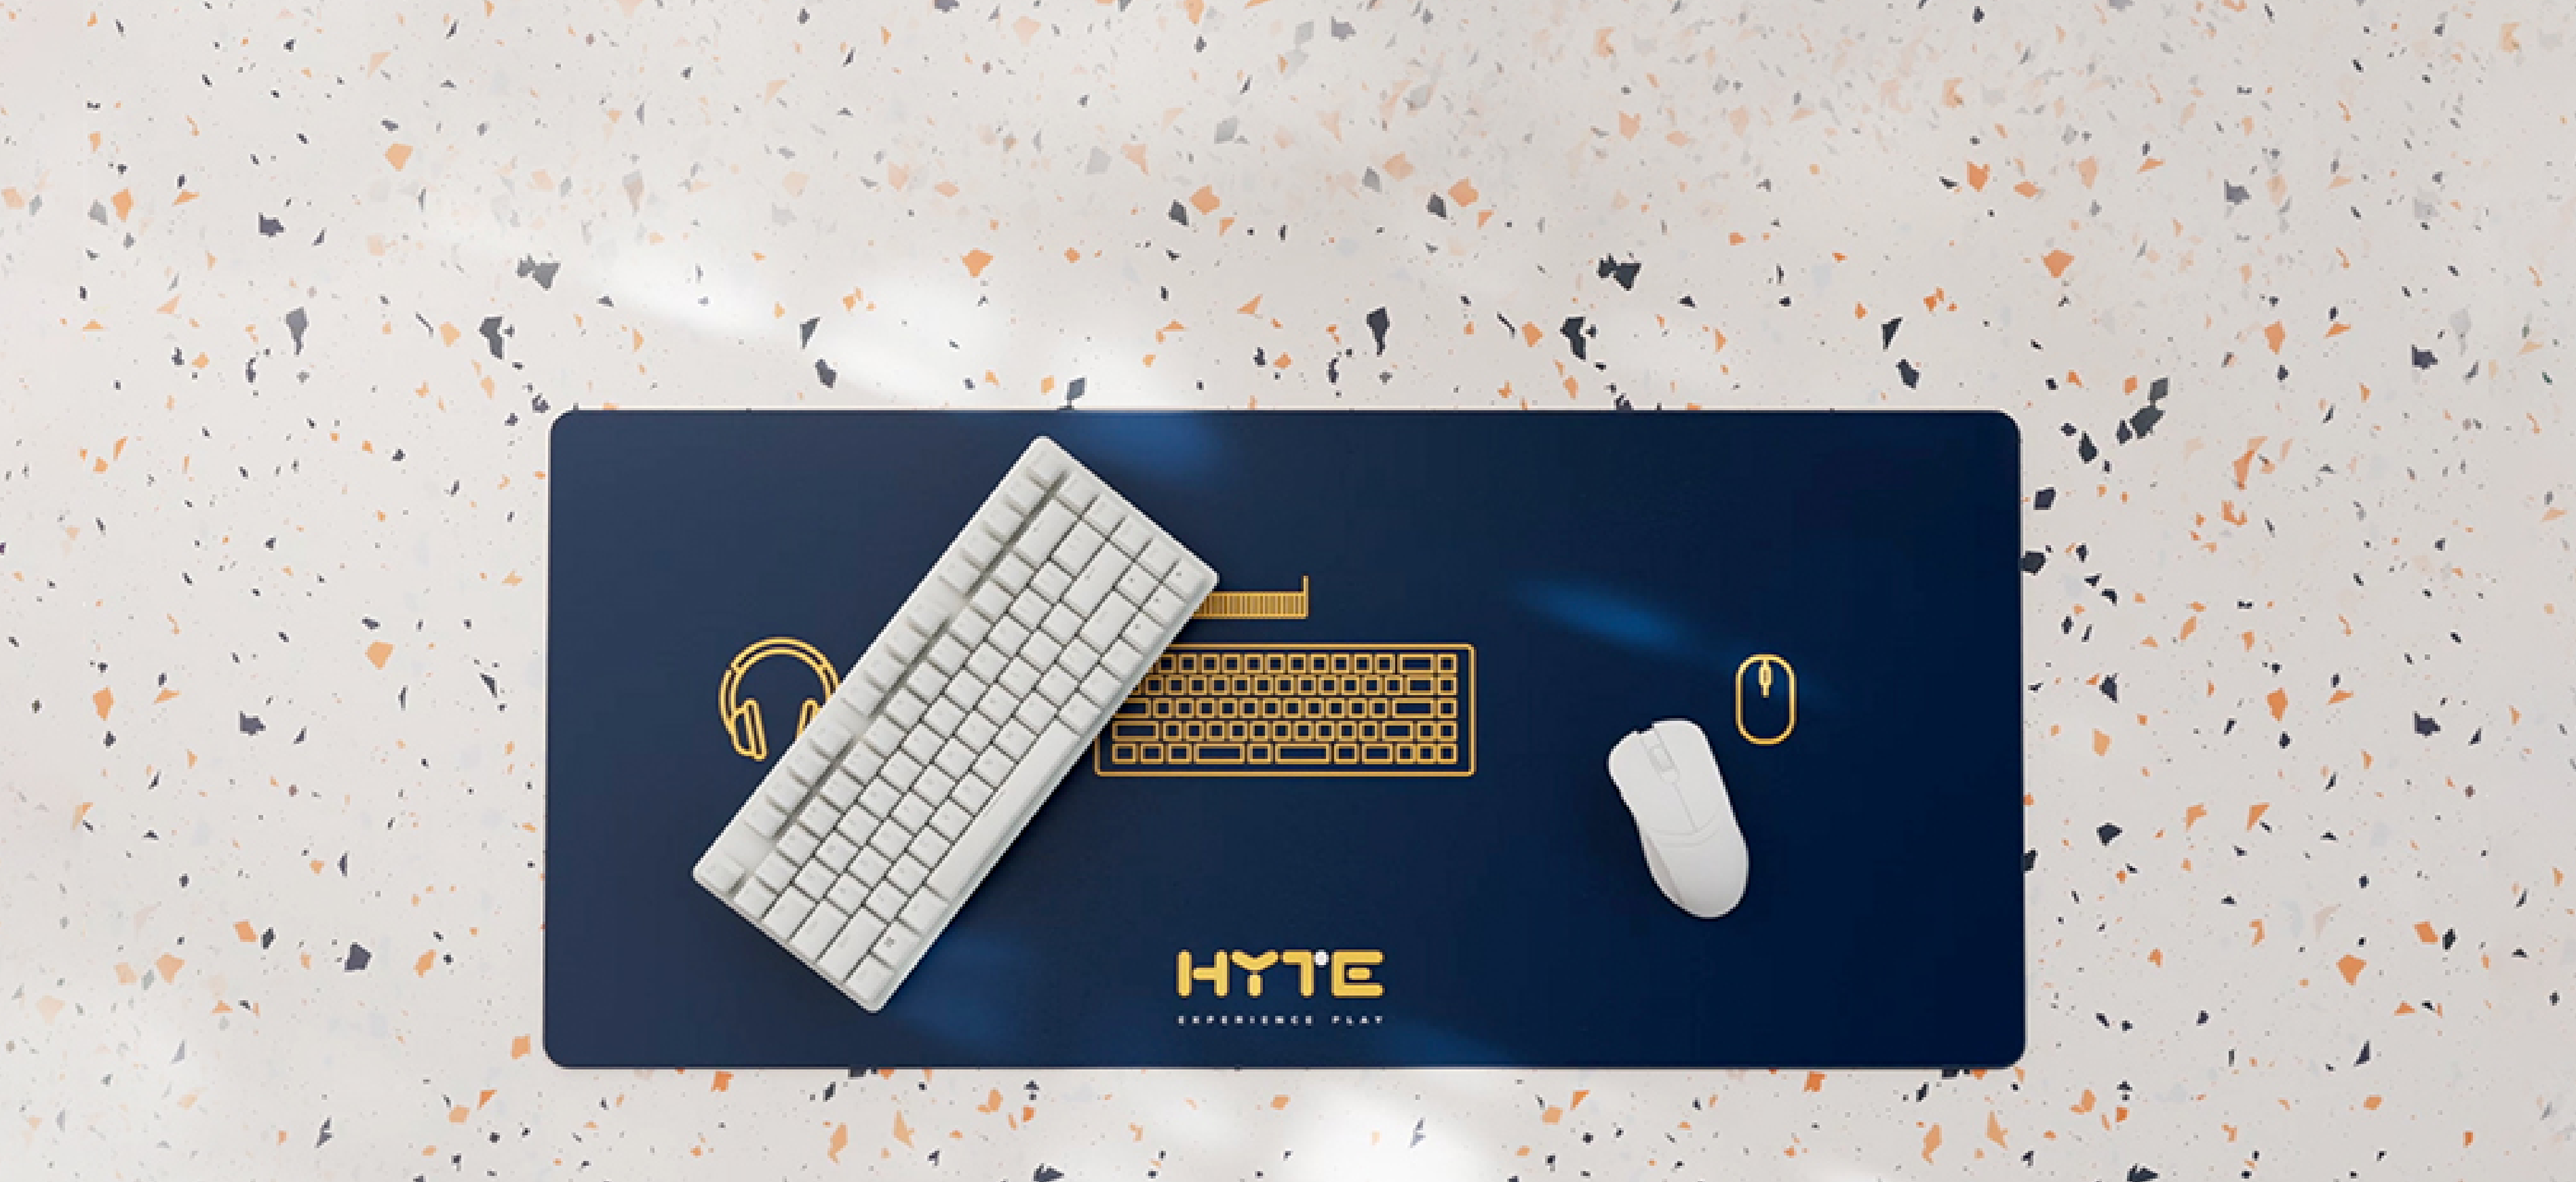 HYTE Deskpad